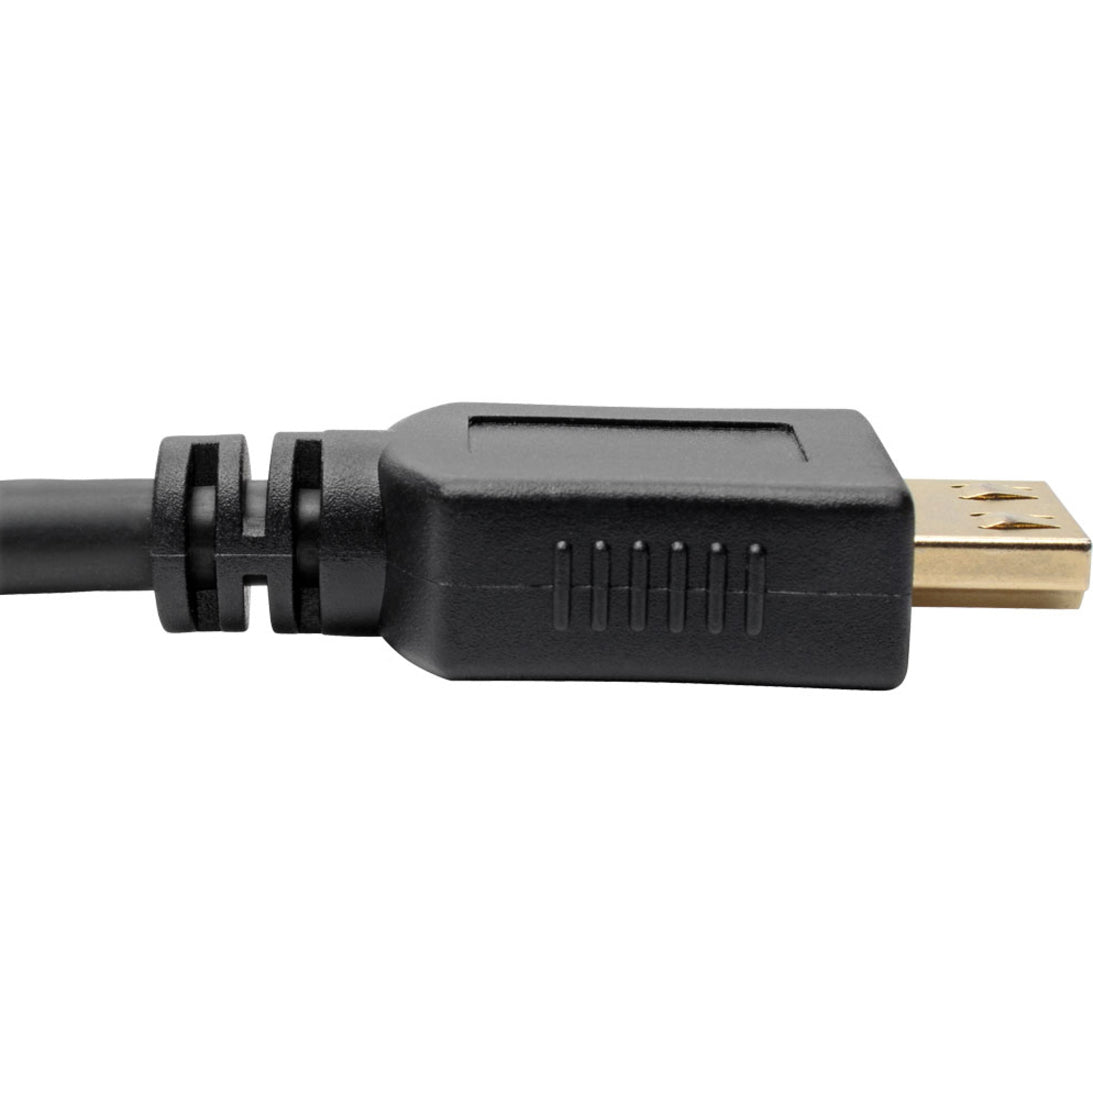 Tripp Lite P568-006-BK-GRP High-Speed HDMI Cable 6 ft. with Gripping Connectors - 4K Black  Tripp Lite P568-006-BK-GRP Câble HDMI haute vitesse 6 pi avec connecteurs grip - 4K noir